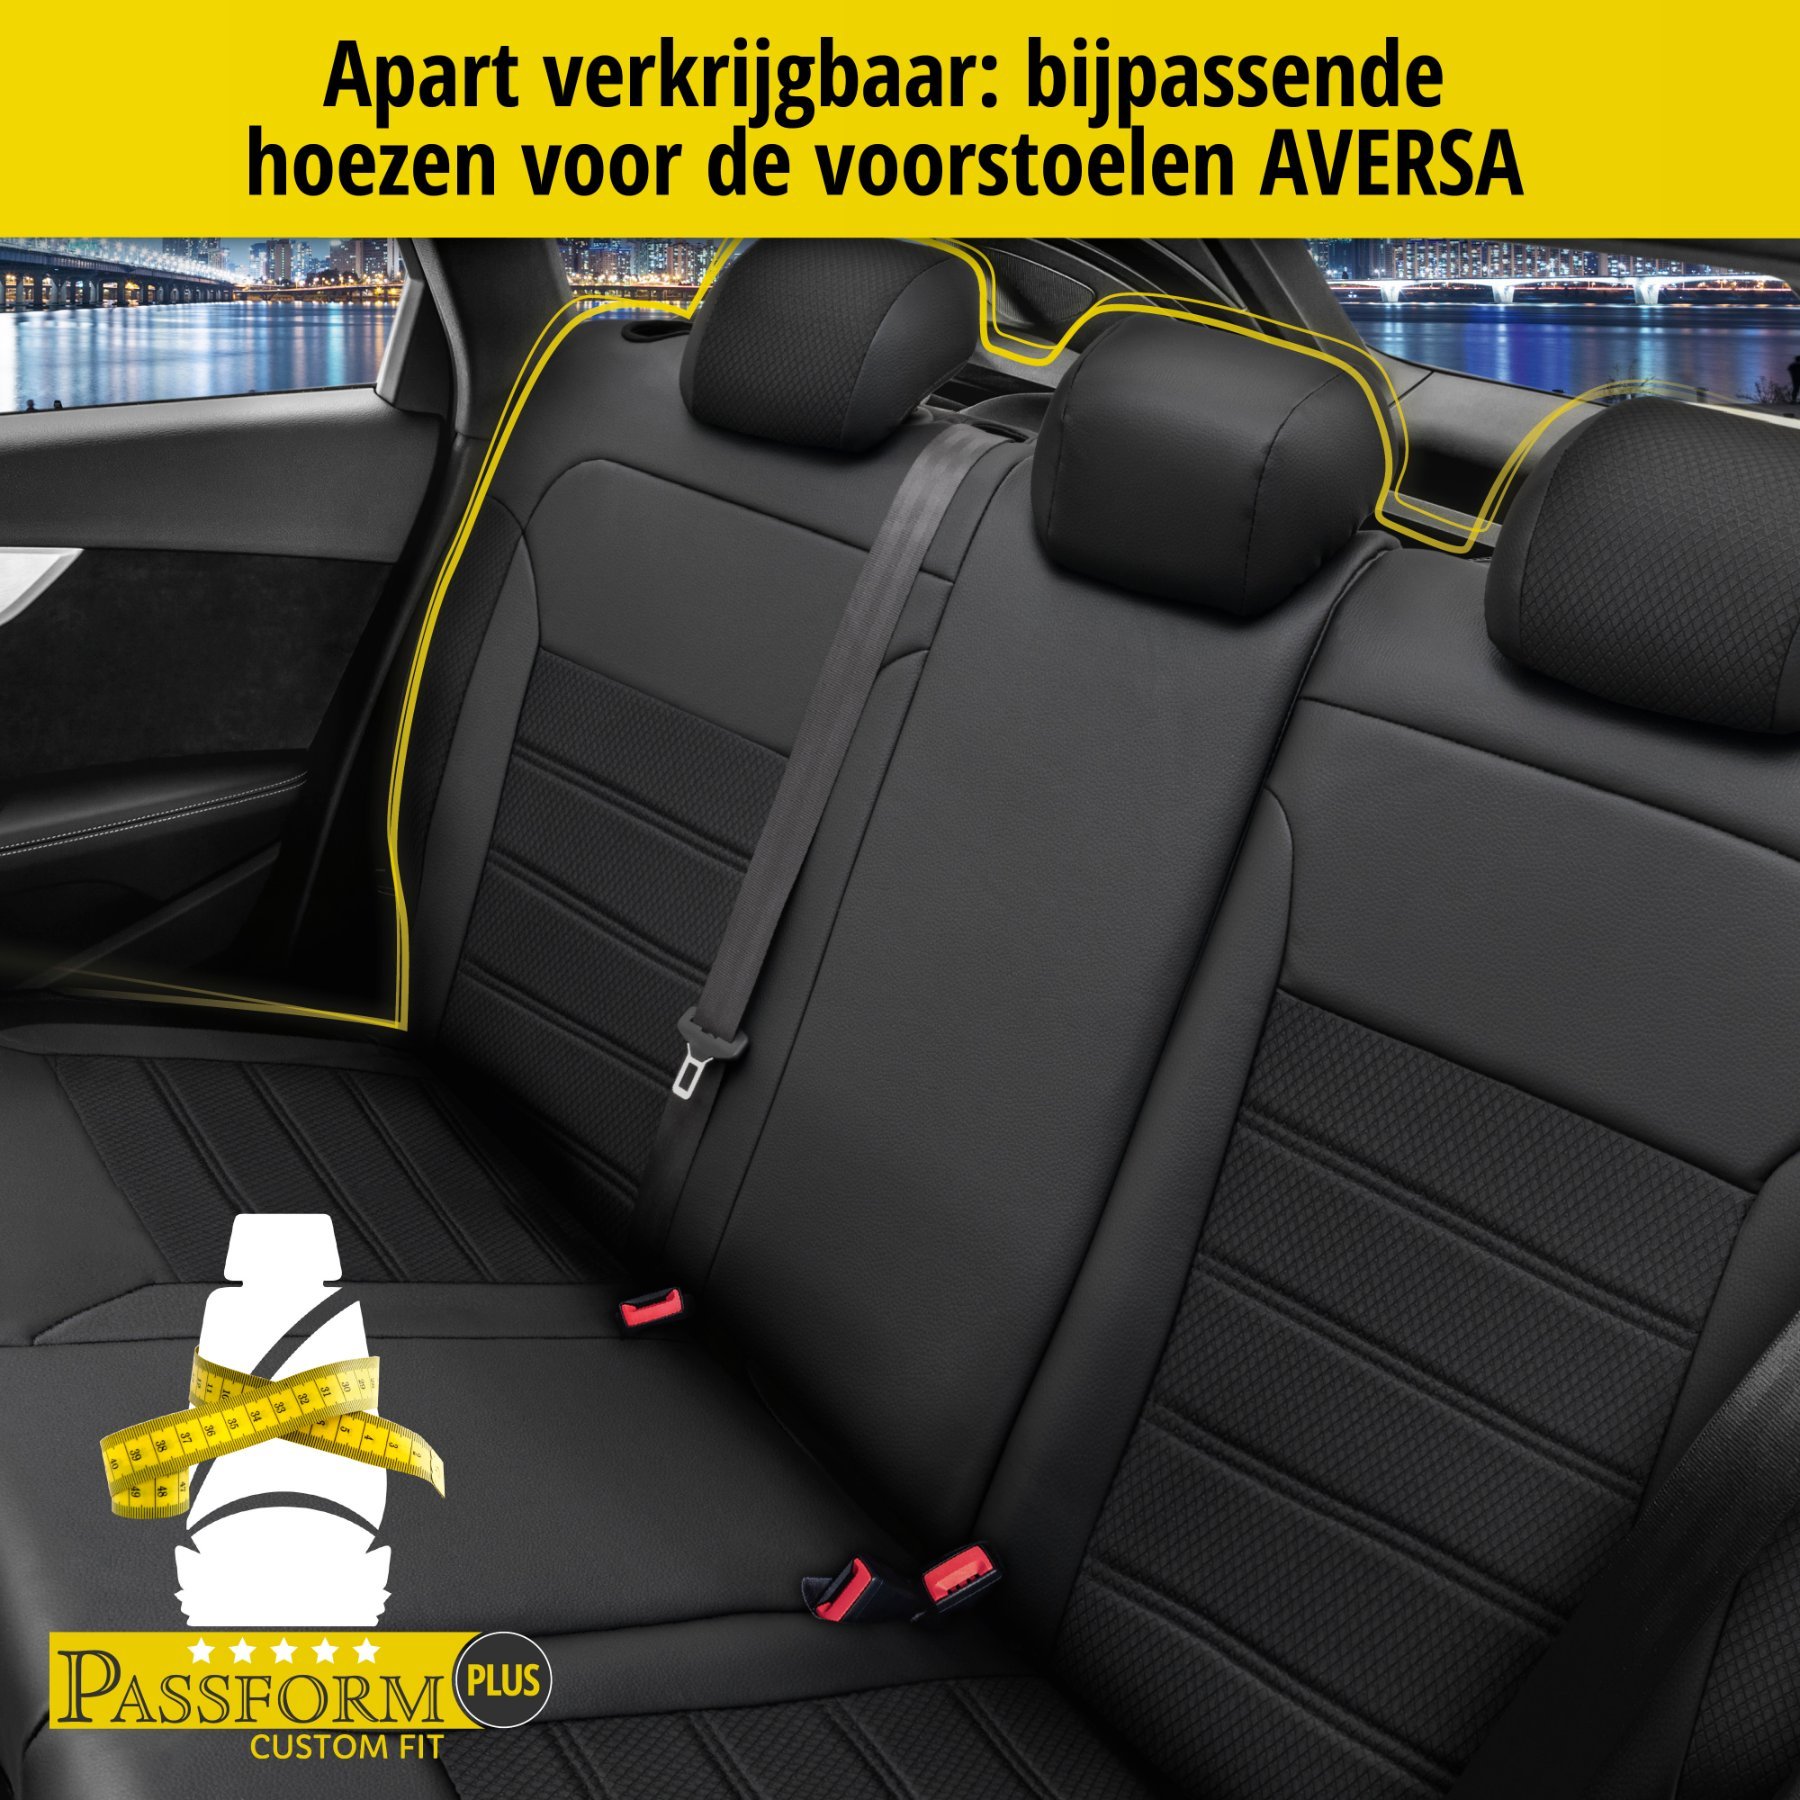 Auto stoelbekleding Aversa geschikt voor BMW X3 (F25) 09/2010-08/2017, 2 enkele zetelhoezen voor standard zetels